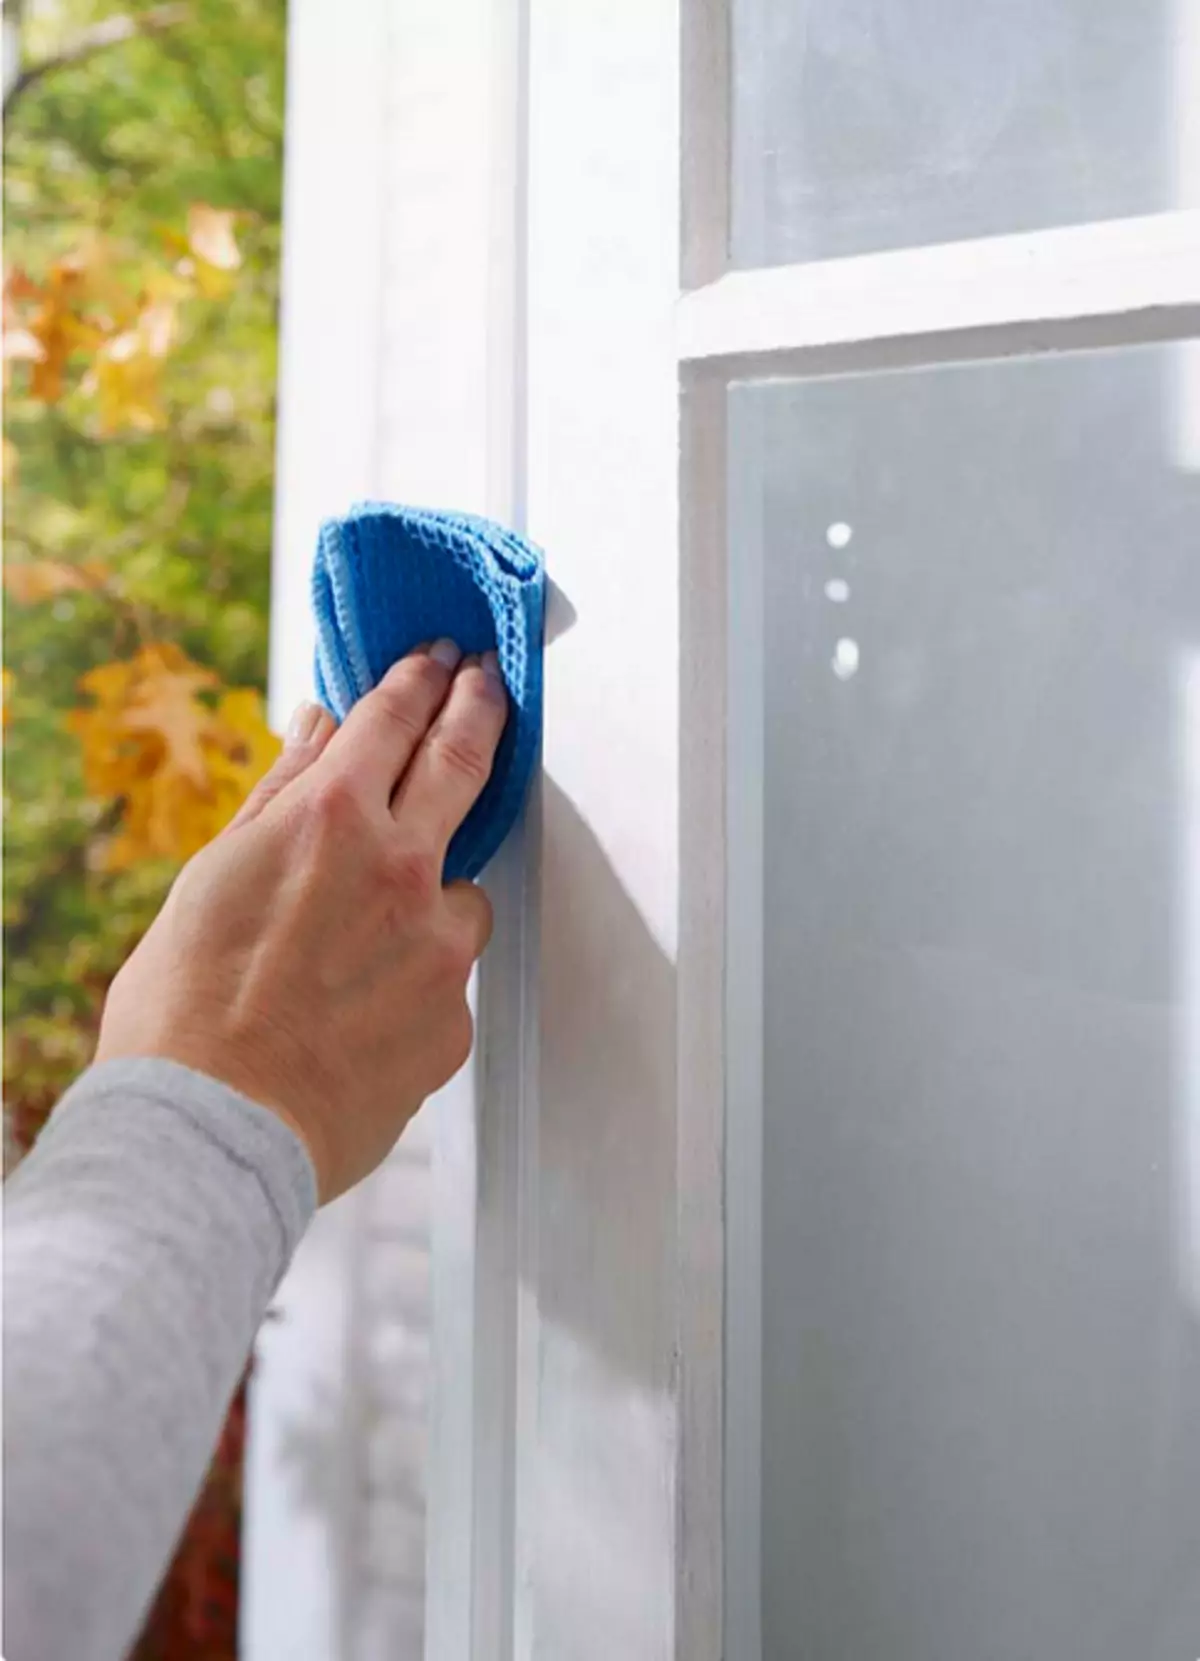 Com segellar les finestres i reduir els costos de calefacció: instruccions detallades 6918_13